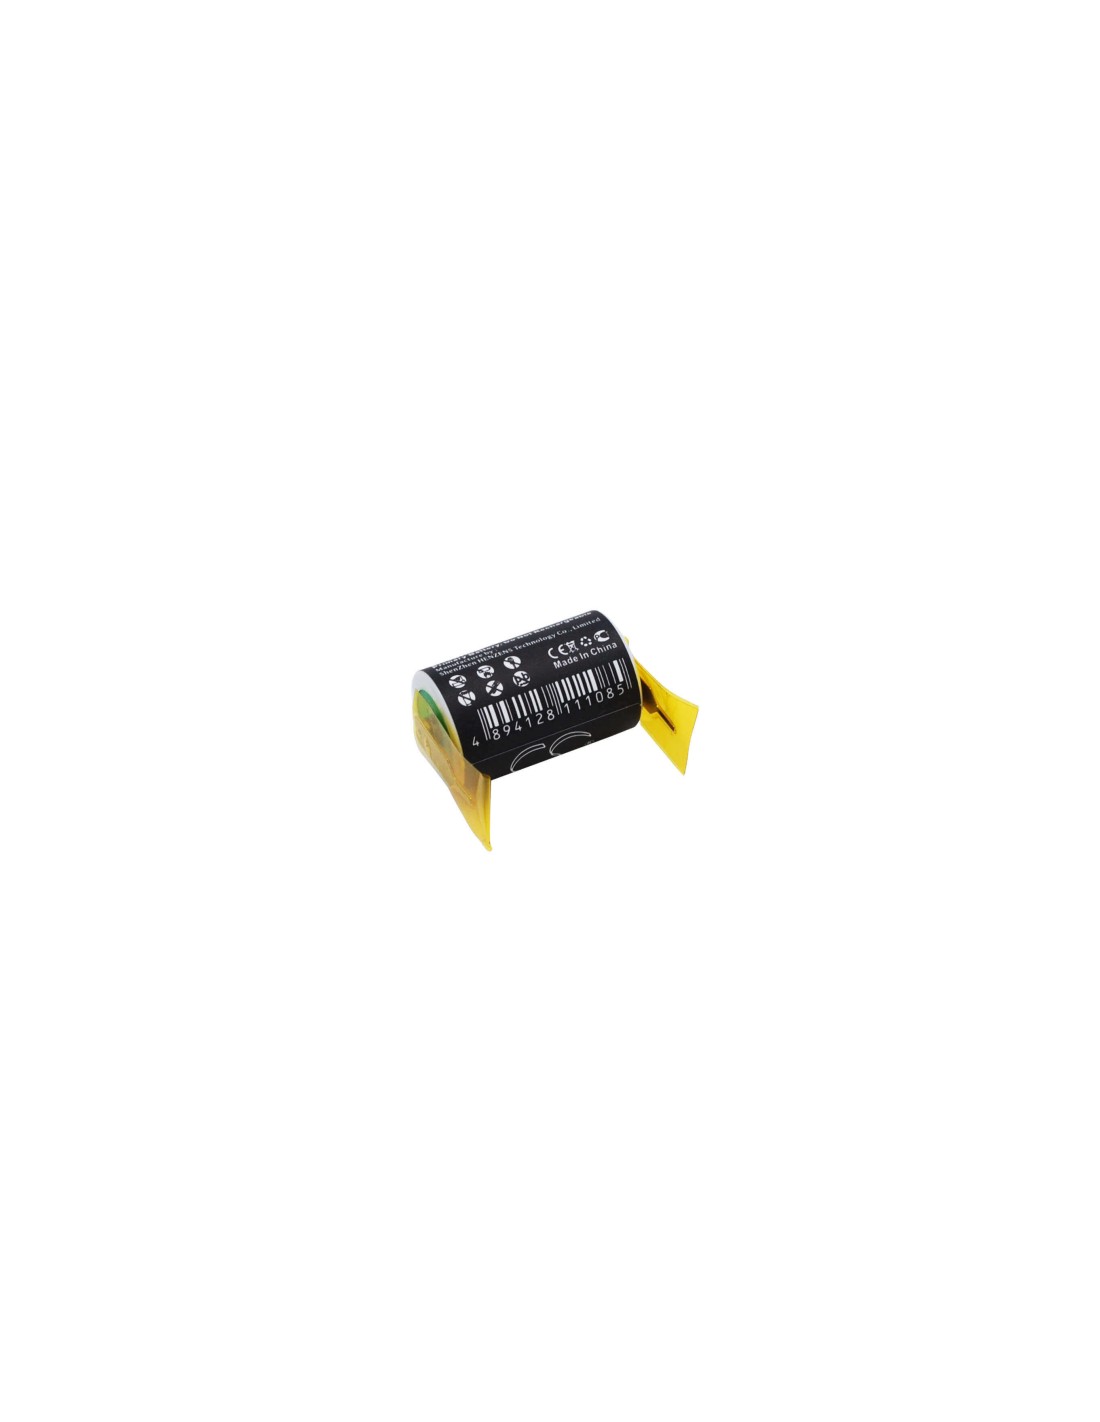 Battery for Saft Ls14250 3.6V, 1200mAh - 4.32Wh